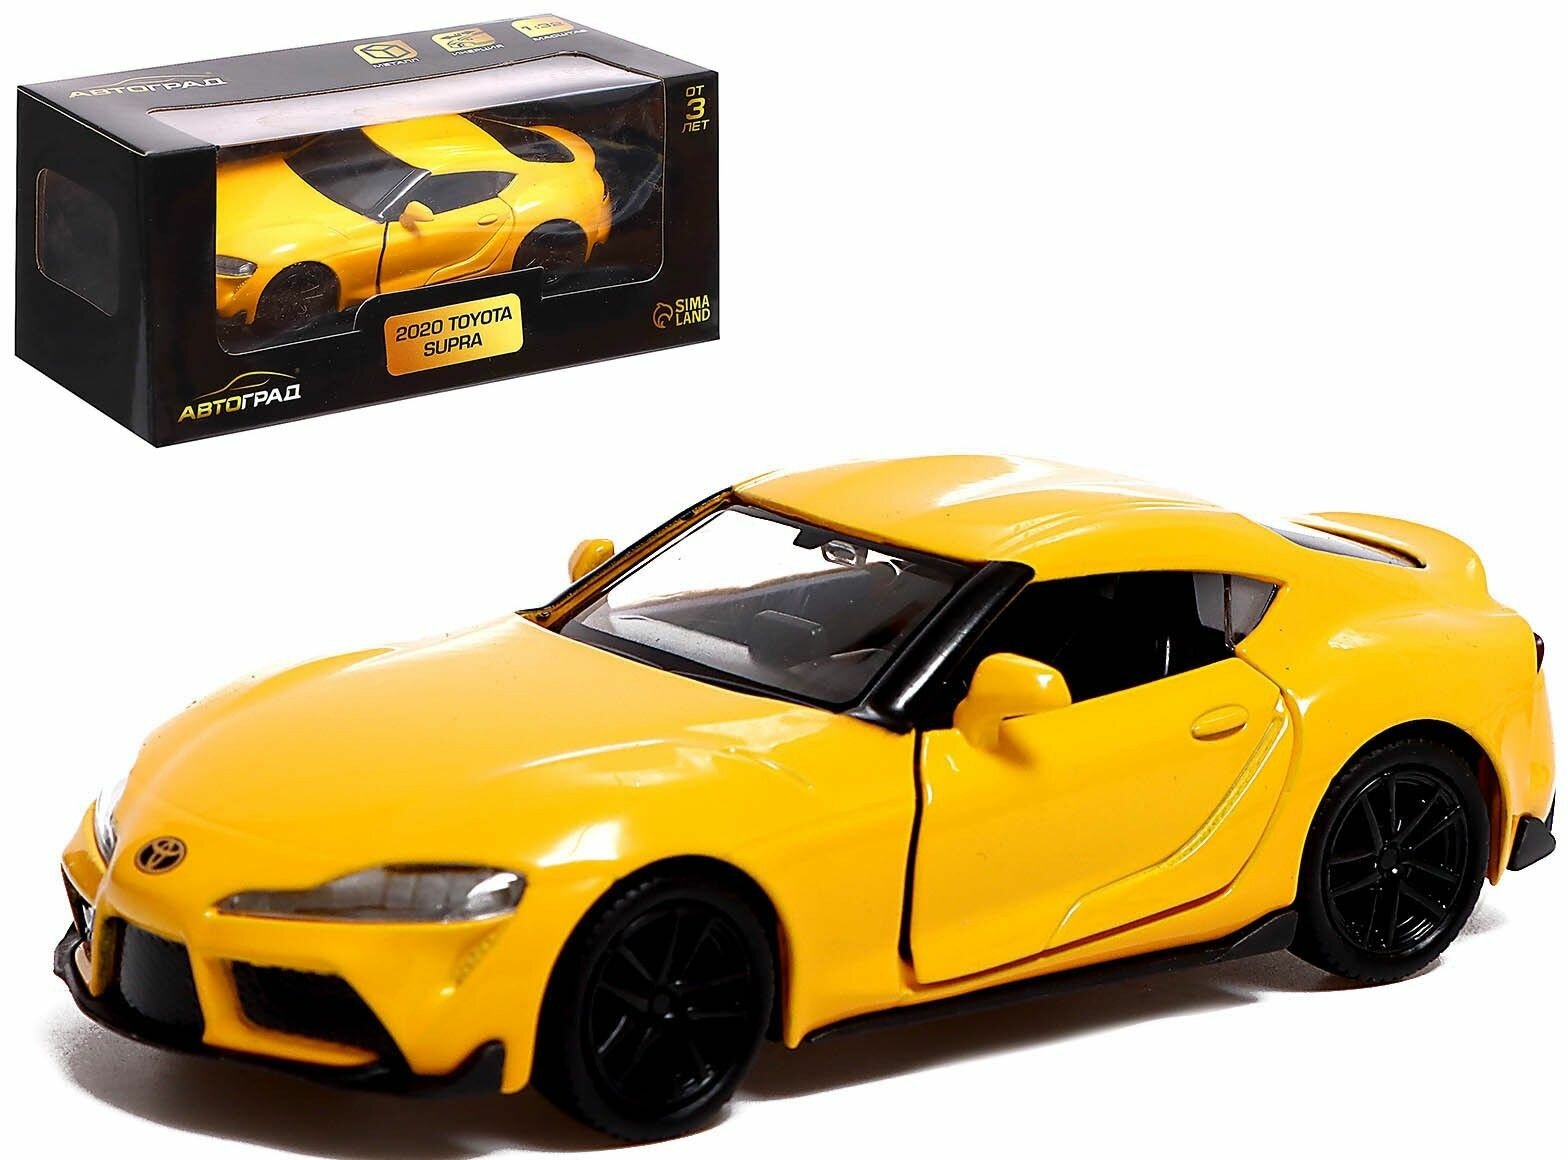 Машина TOYOTA SUPRA инерционная, открываются двери, металлическая коллекционная модель, игрушечный транспорт, цвет жёлтый